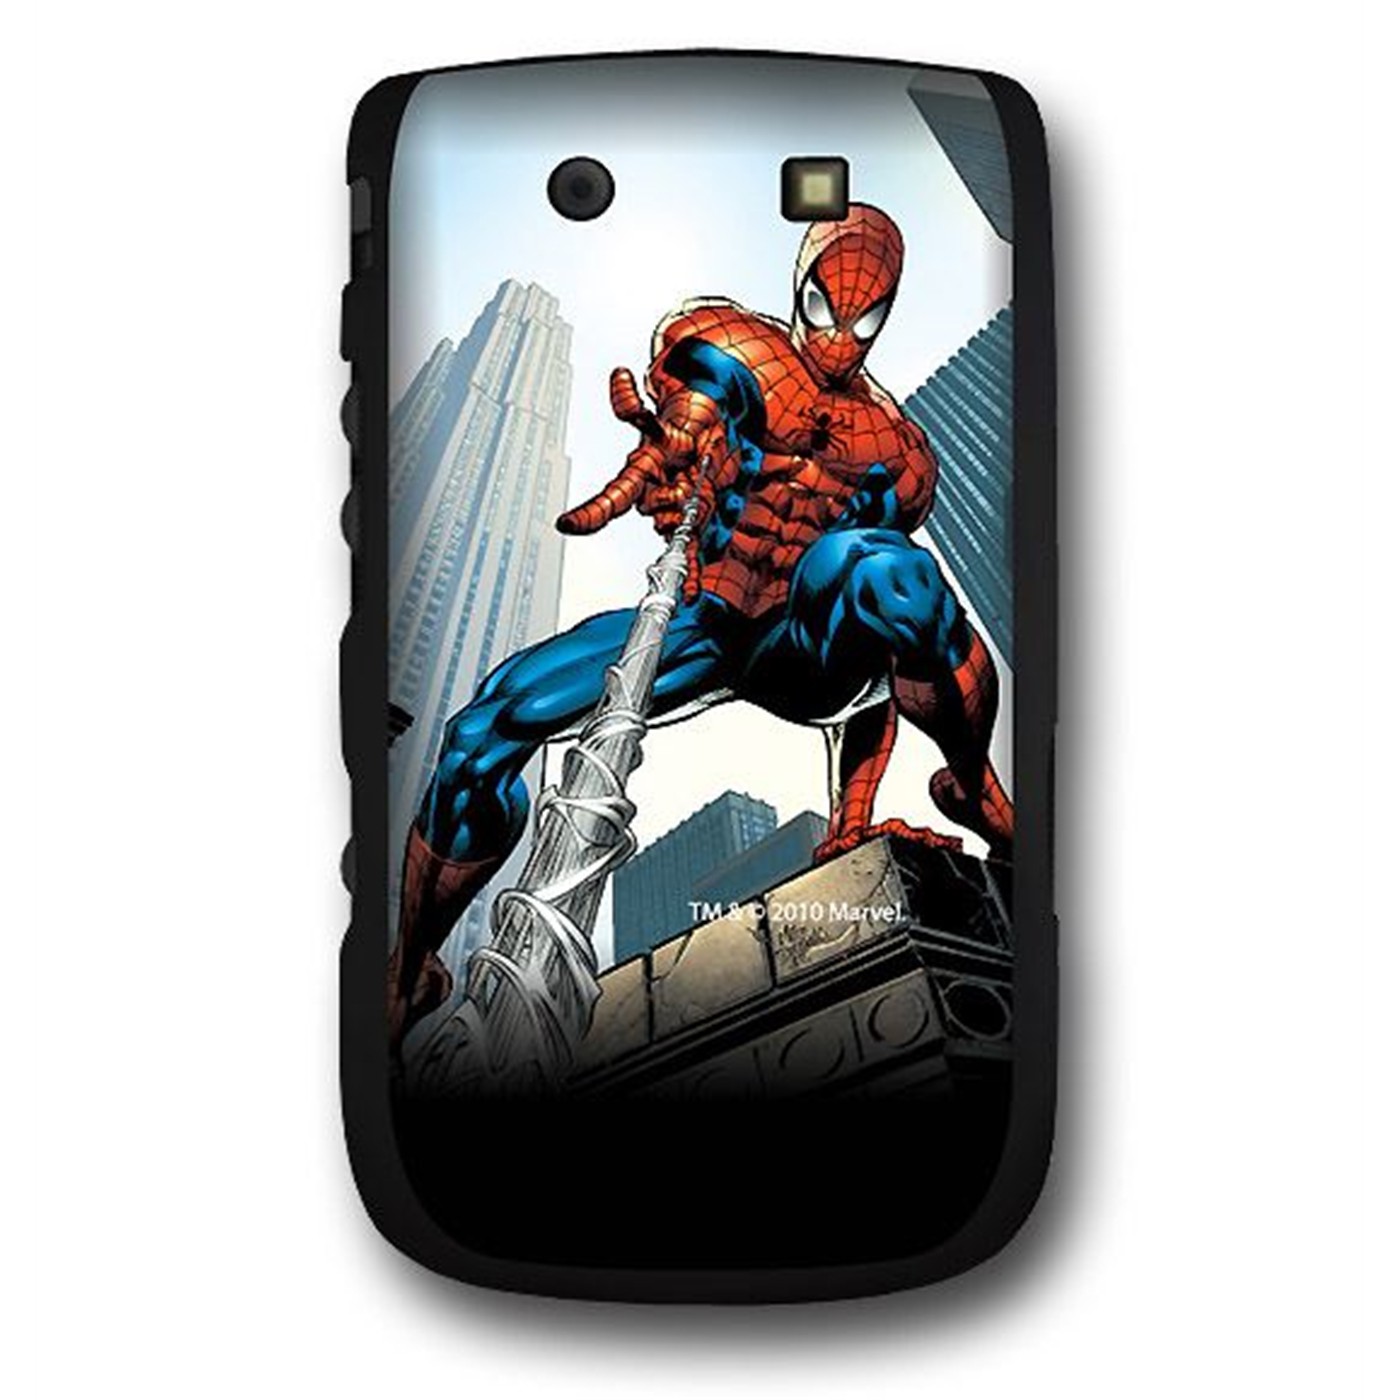 Spiderman Pose Blackberry Torch 9800 Case